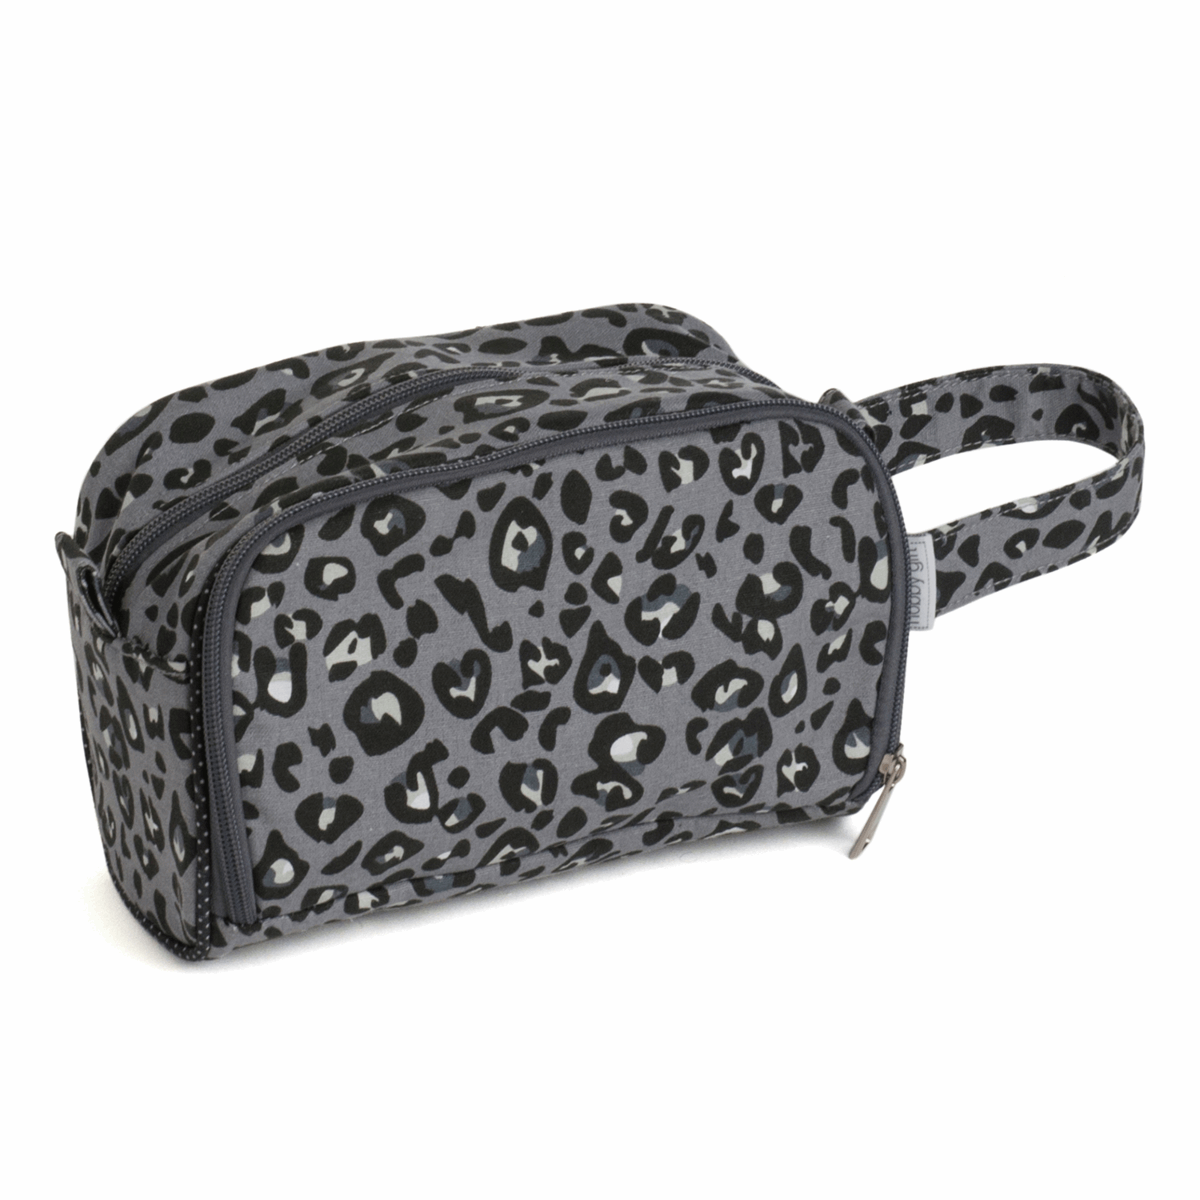 Crochet Hook Bag with Side Pocket - Leopard